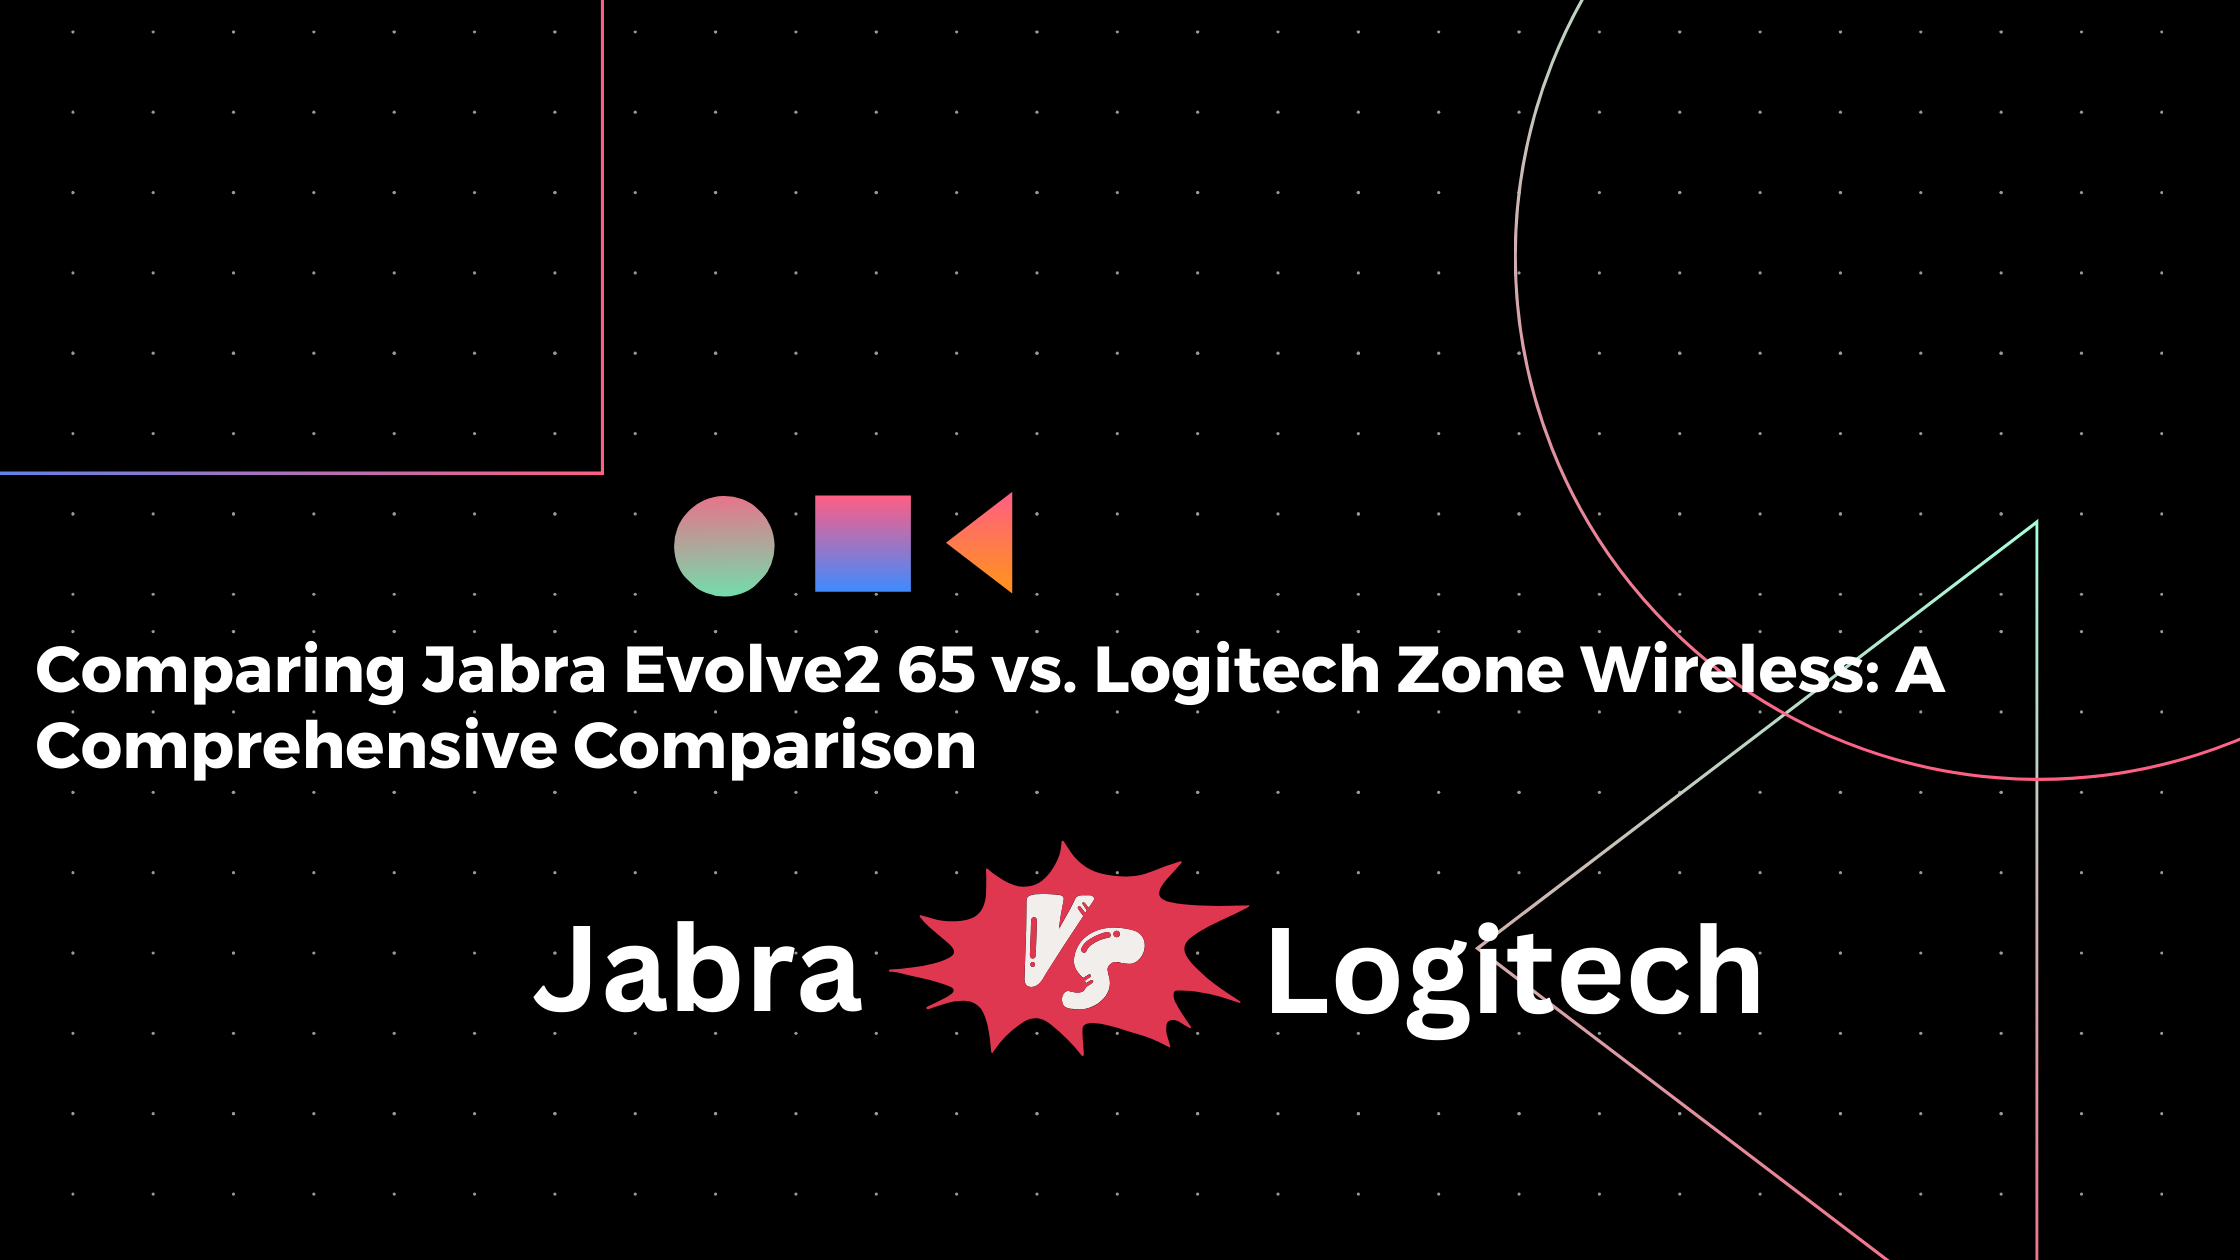 Comparing Jabra Evolve2 65 vs. Logitech Zone Wireless: A Comprehensive Comparison